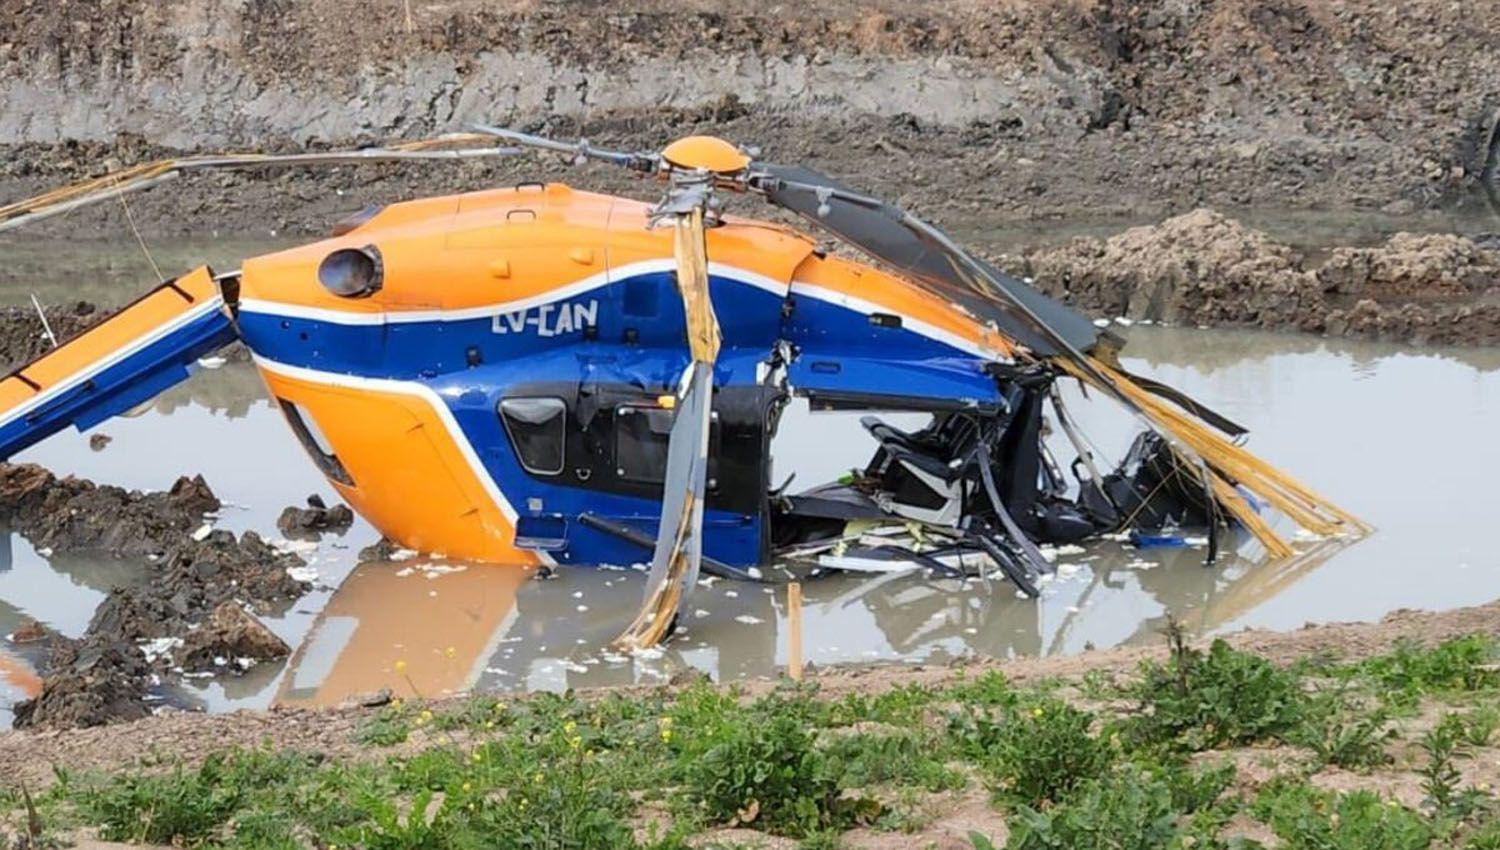 Grave accidente aeacutereo- se cayoacute un helicoacuteptero y hay cuatro heridos